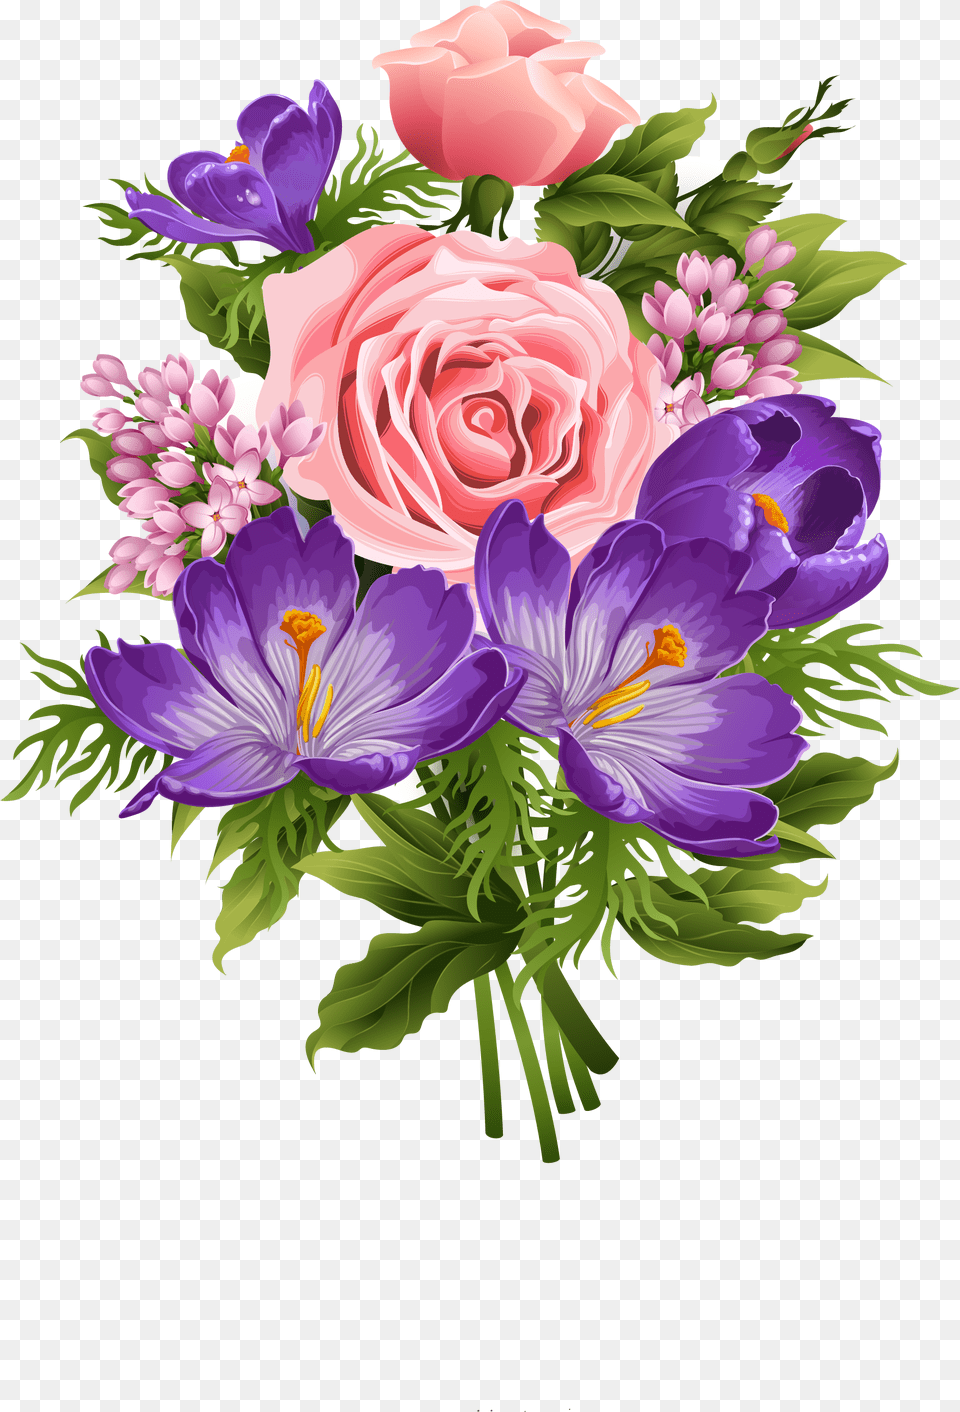 Beautiful Flower Clipart, Flower Arrangement, Flower Bouquet, Plant, Rose Free Transparent Png